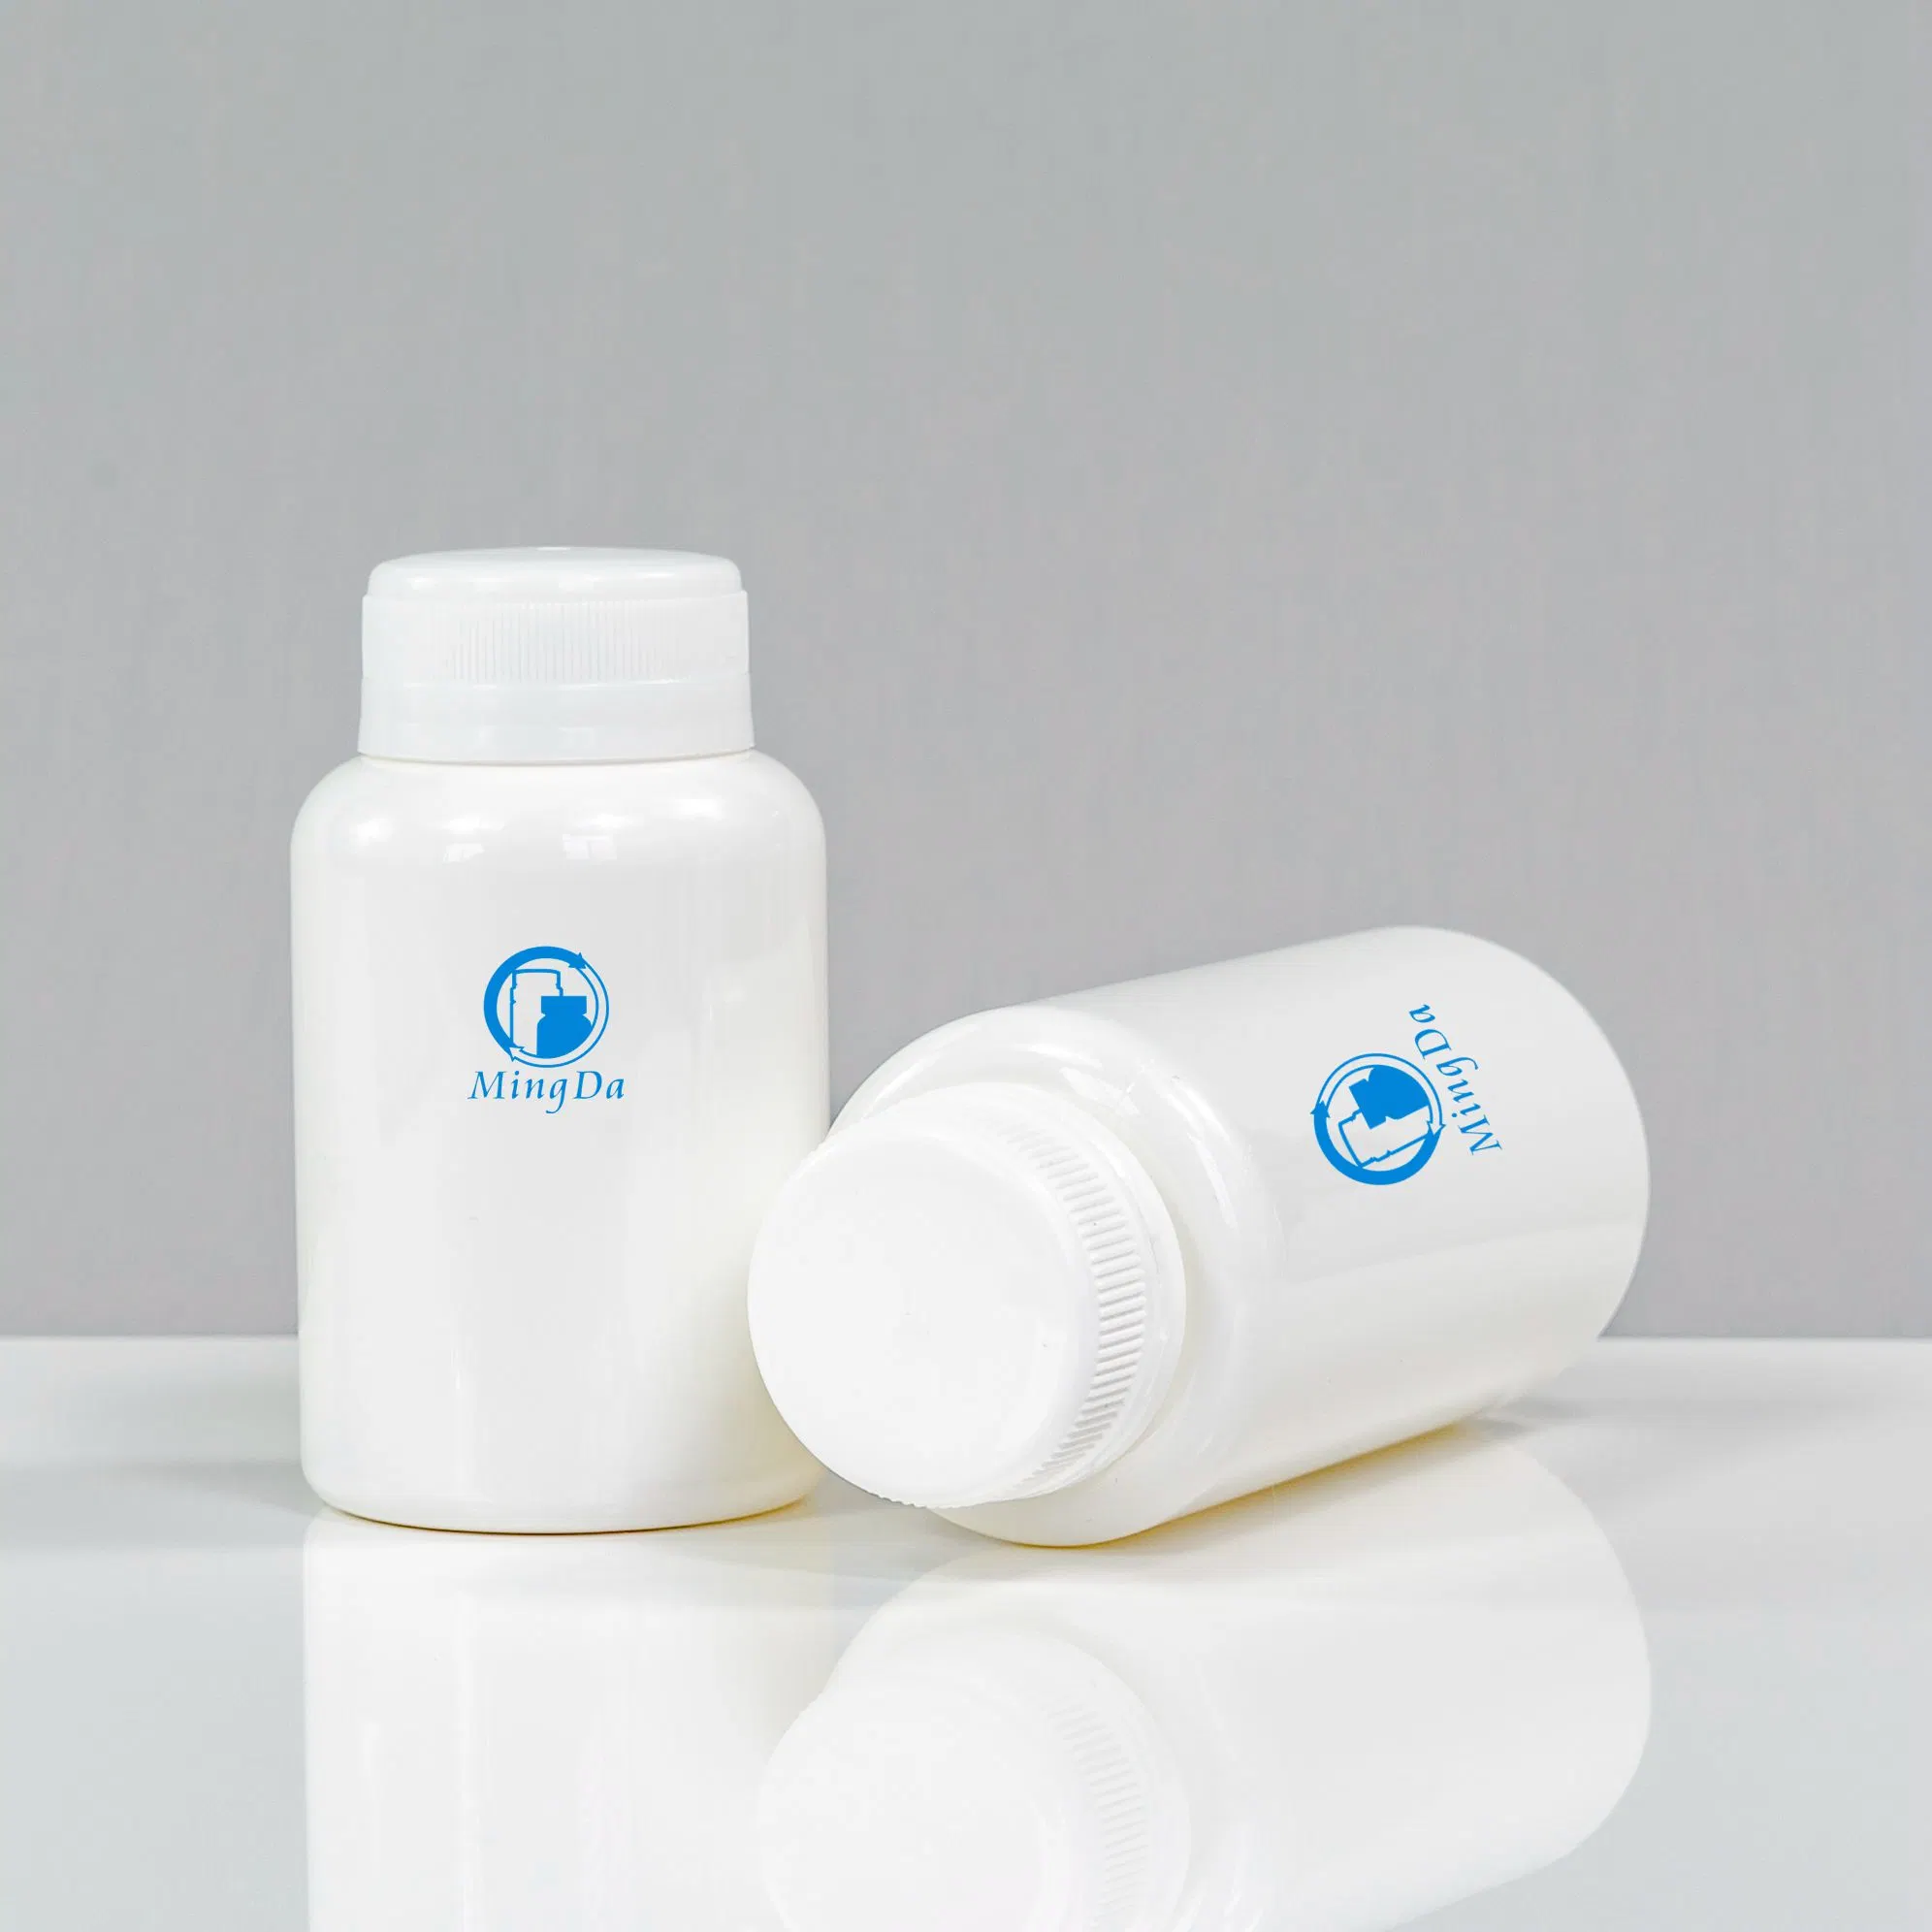 Immune Gesundheitsprodukte Frauen Gesundheit Schönheit Unterstützung Mahlzeit Ersatz Dietory Ergänzung Mineralien Omega3 Booster Biotics Verpackung Haustier Plastikflasche